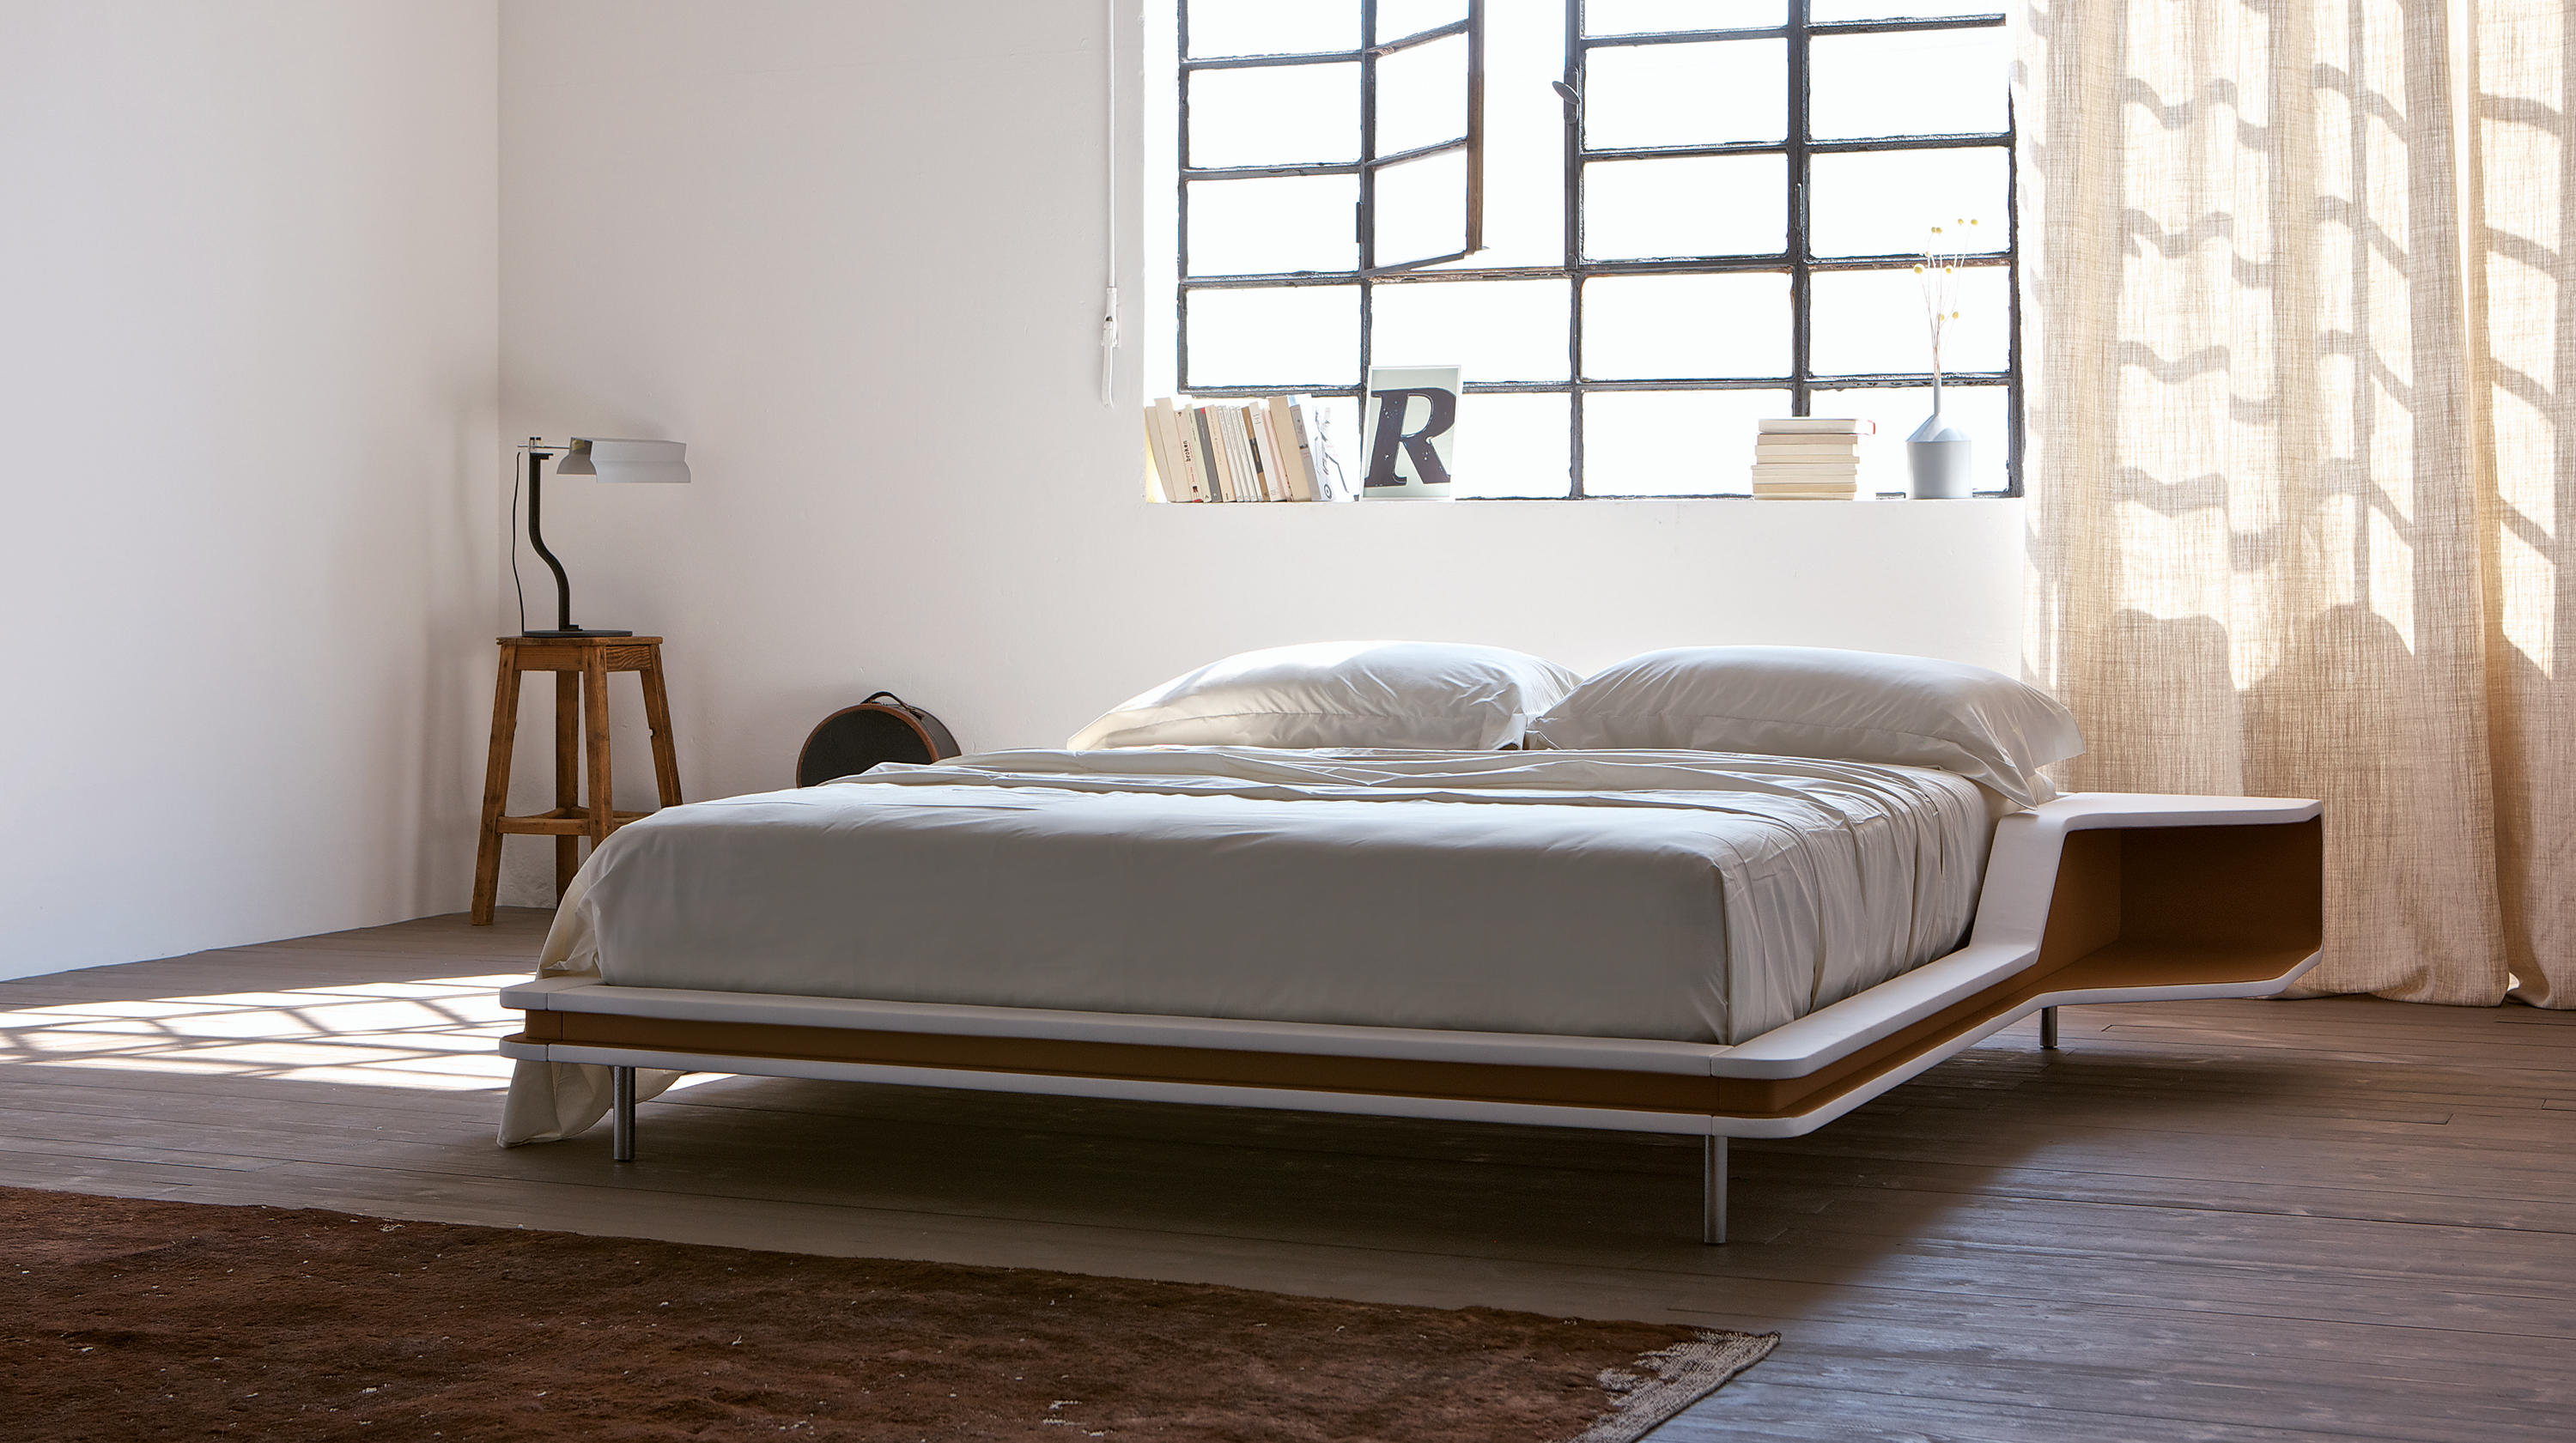 Ayrton Bed Beds From Estel Group, Floyd Bed Frame Review Reddit